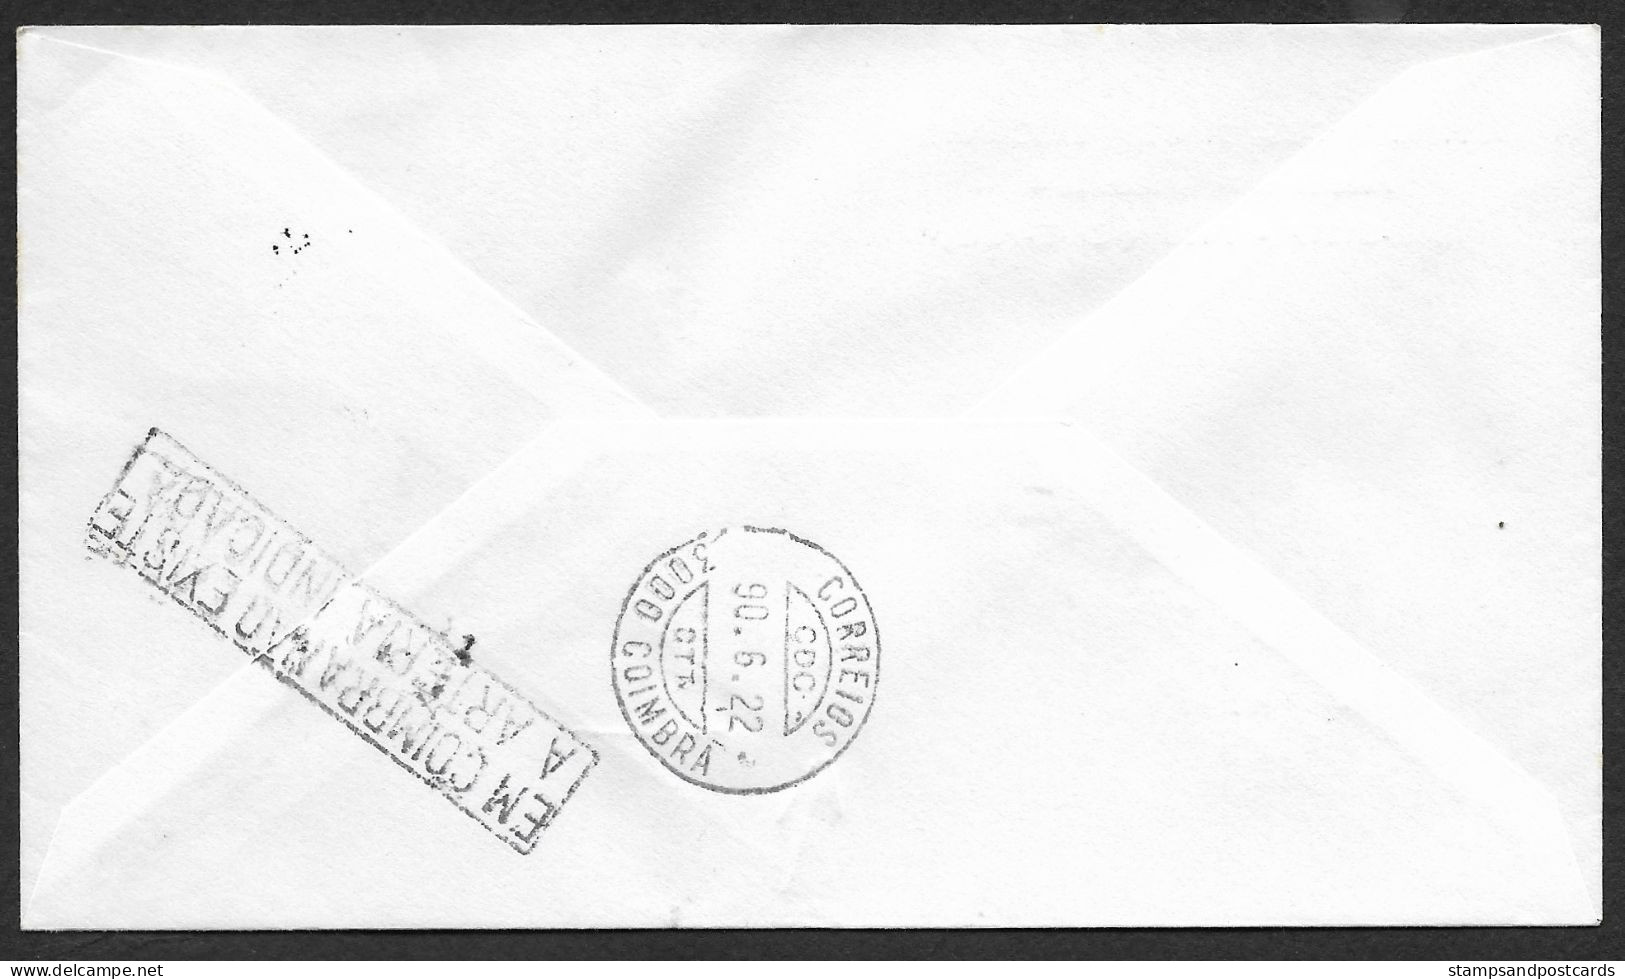 Portugal Lettre Retourné Coimbra 1990 Cachet Commemoratif Musée Art Ancienne Ancient Art Museum Event Pmk Returned Cover - Postal Logo & Postmarks